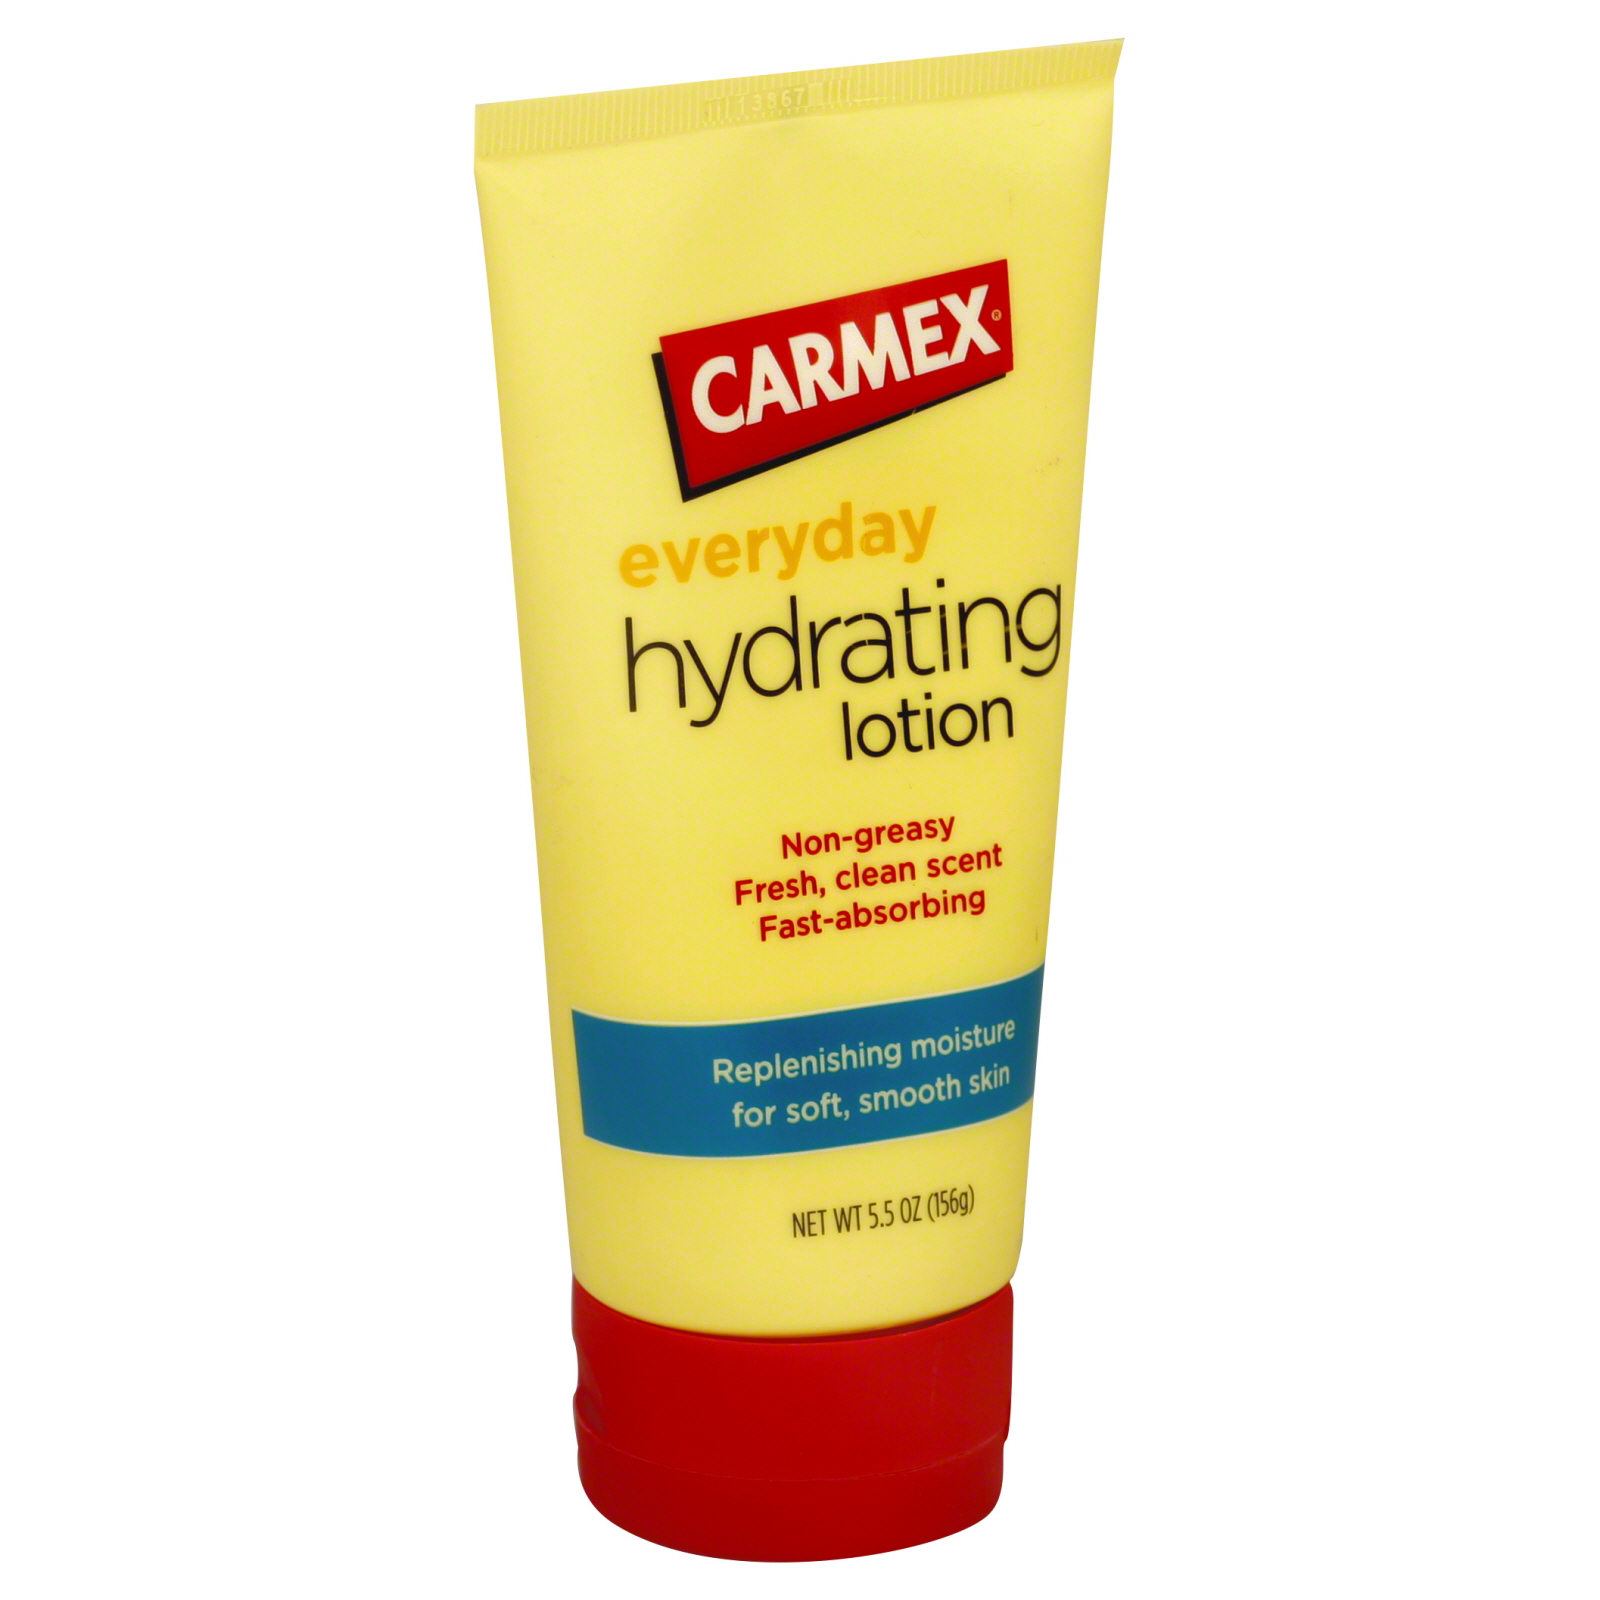 Carmex Everyday Hydrating Lotion, 5.5 oz (156 g)